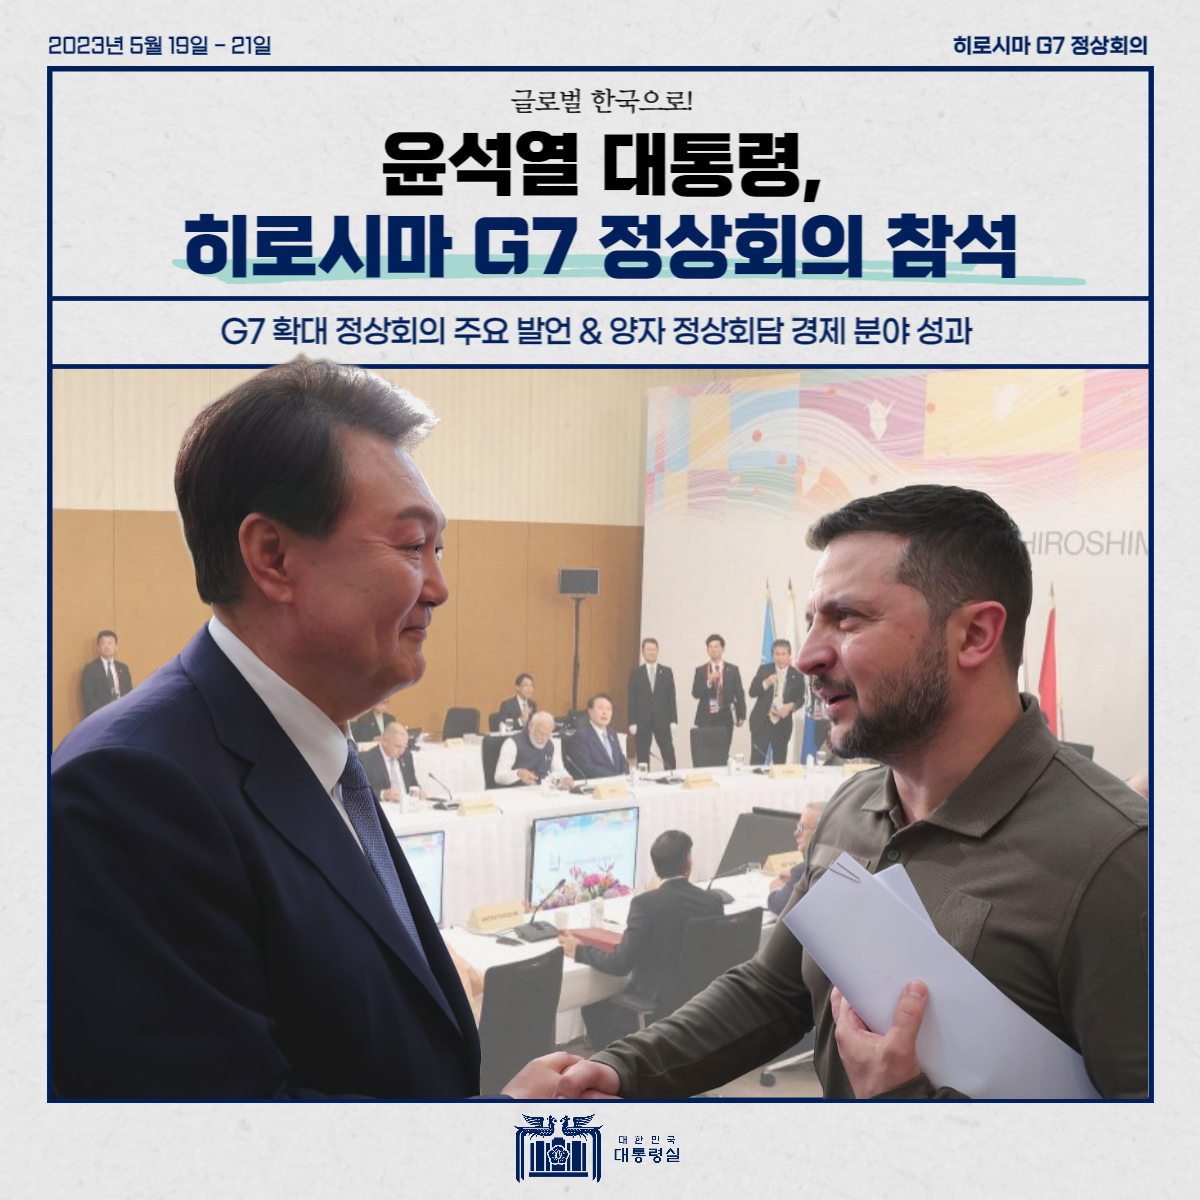 글로벌 한국으로! 윤석열 대통령, 히로시마 G7 정상회의 참석!